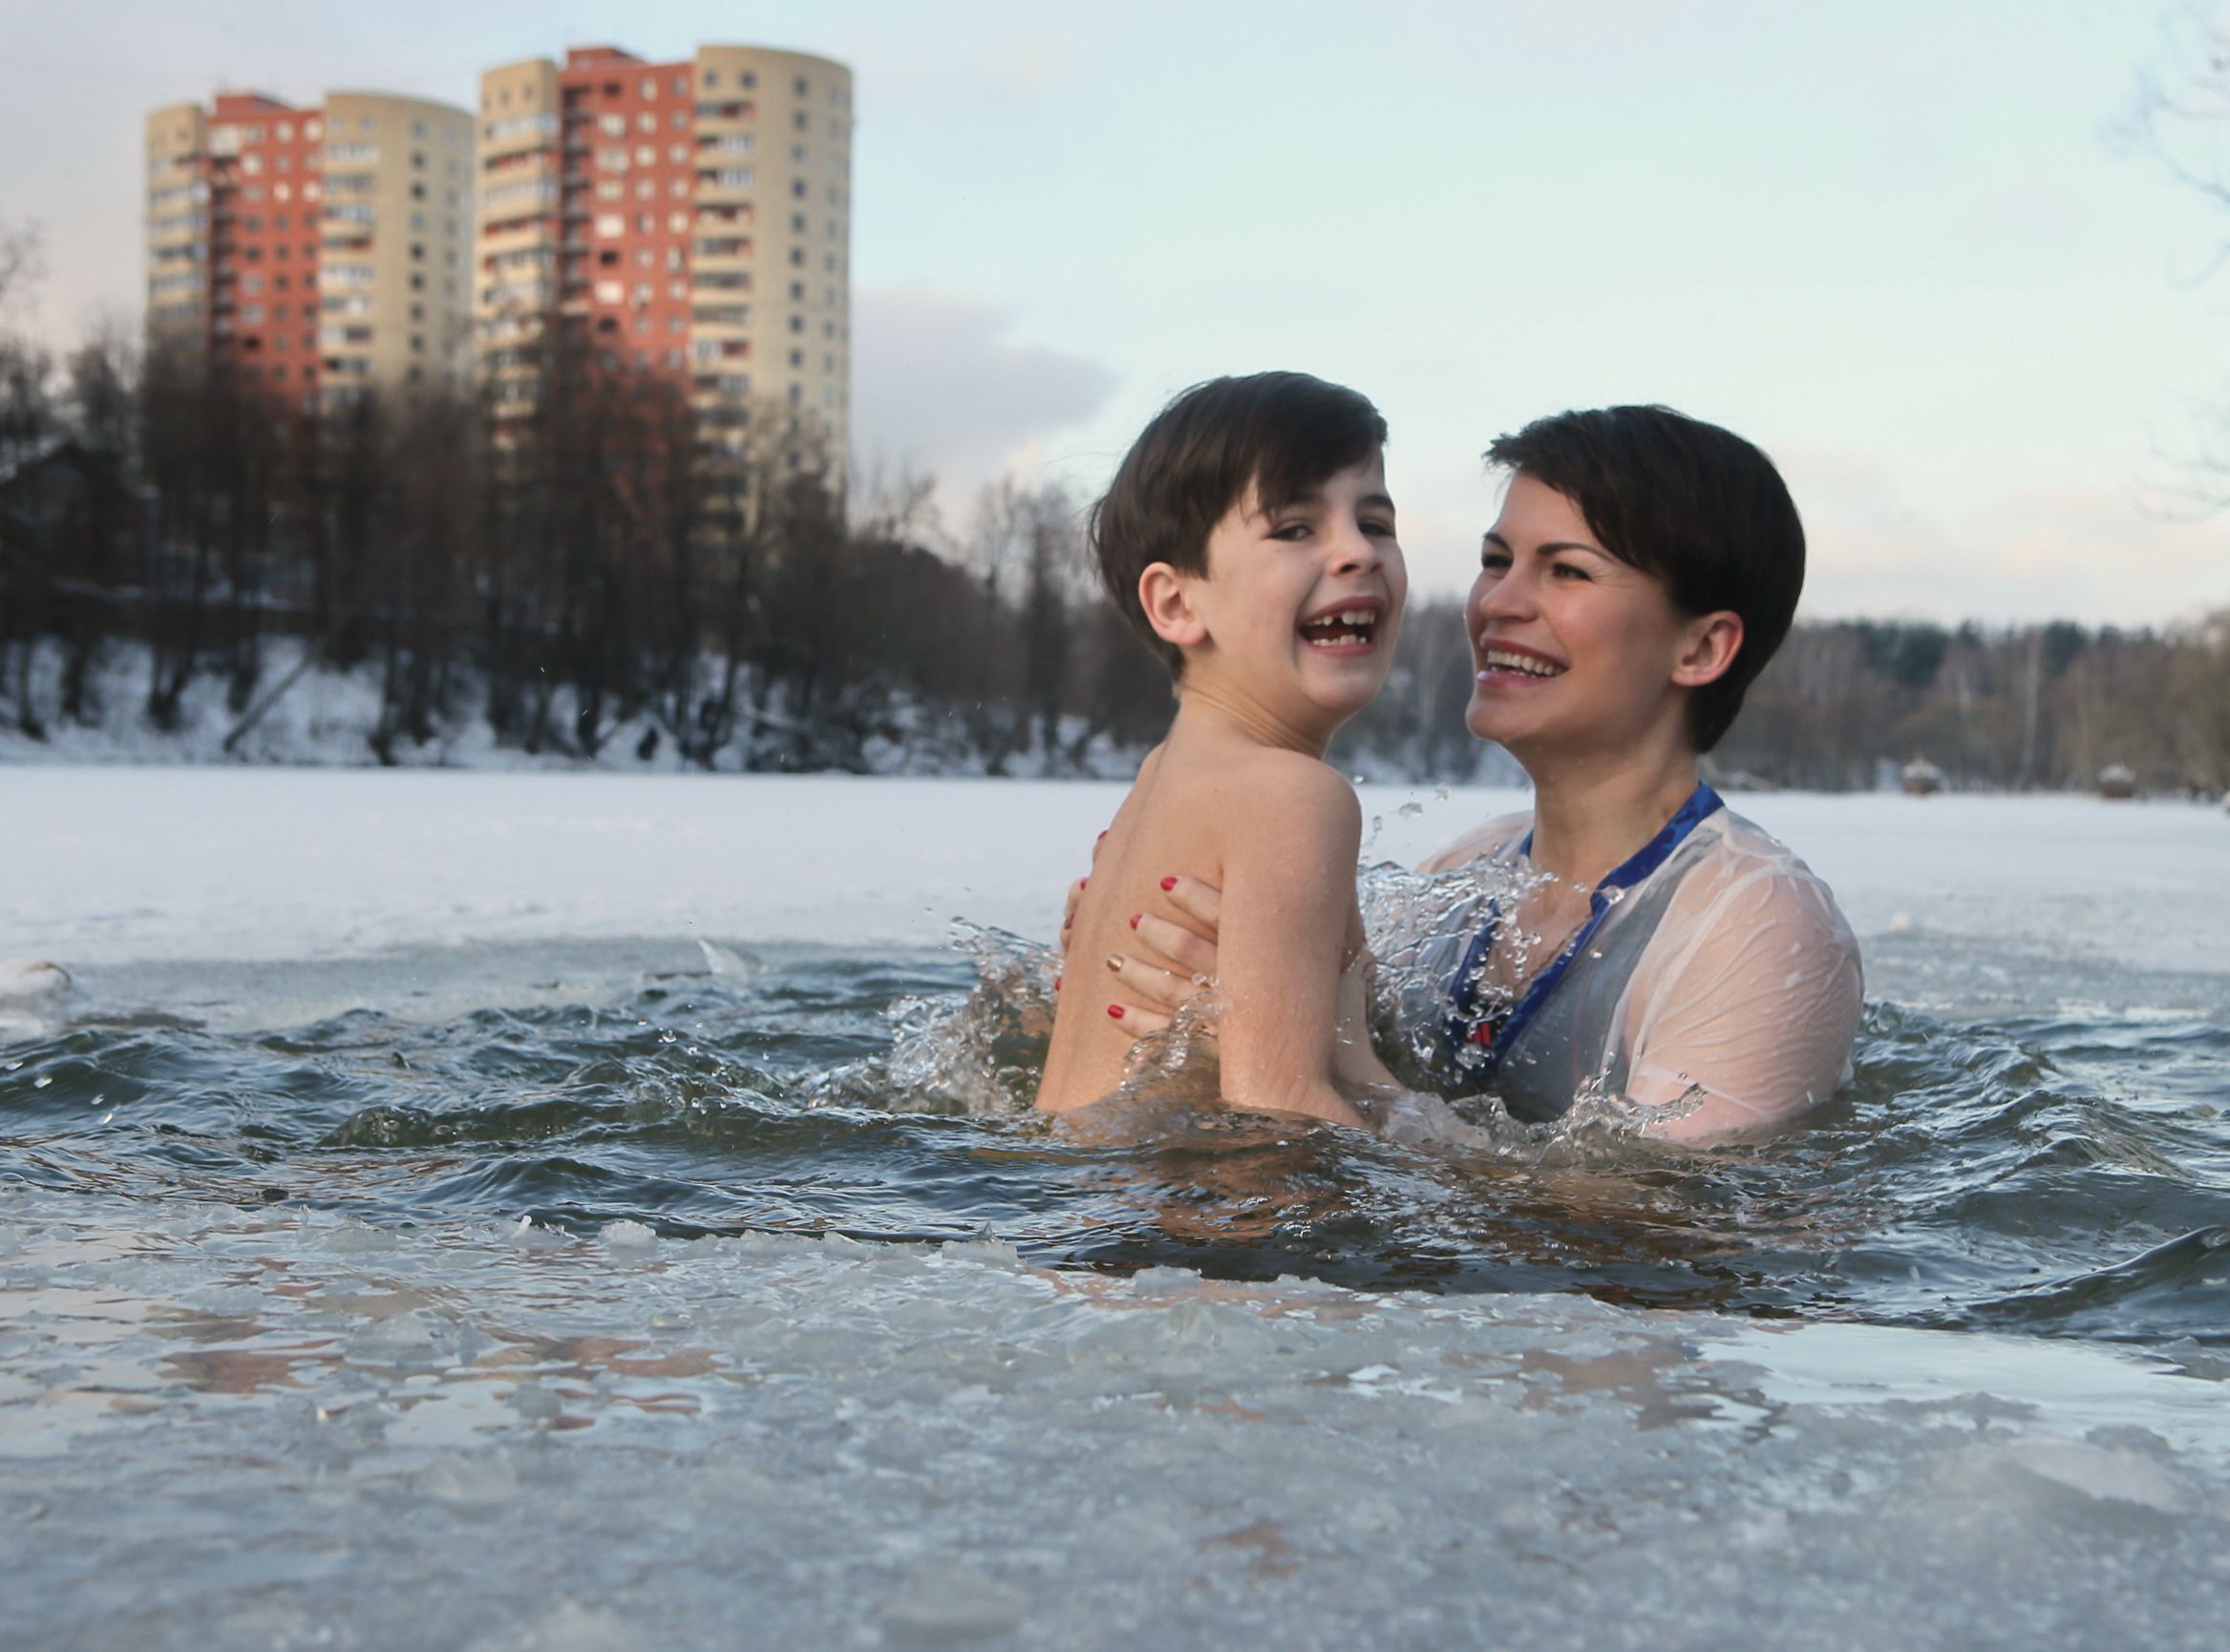 14 января 2018 года. Троицк. Олеся Витебская с сыном Марком ледяной воды не боятся. Фото: Виктор Хабаров